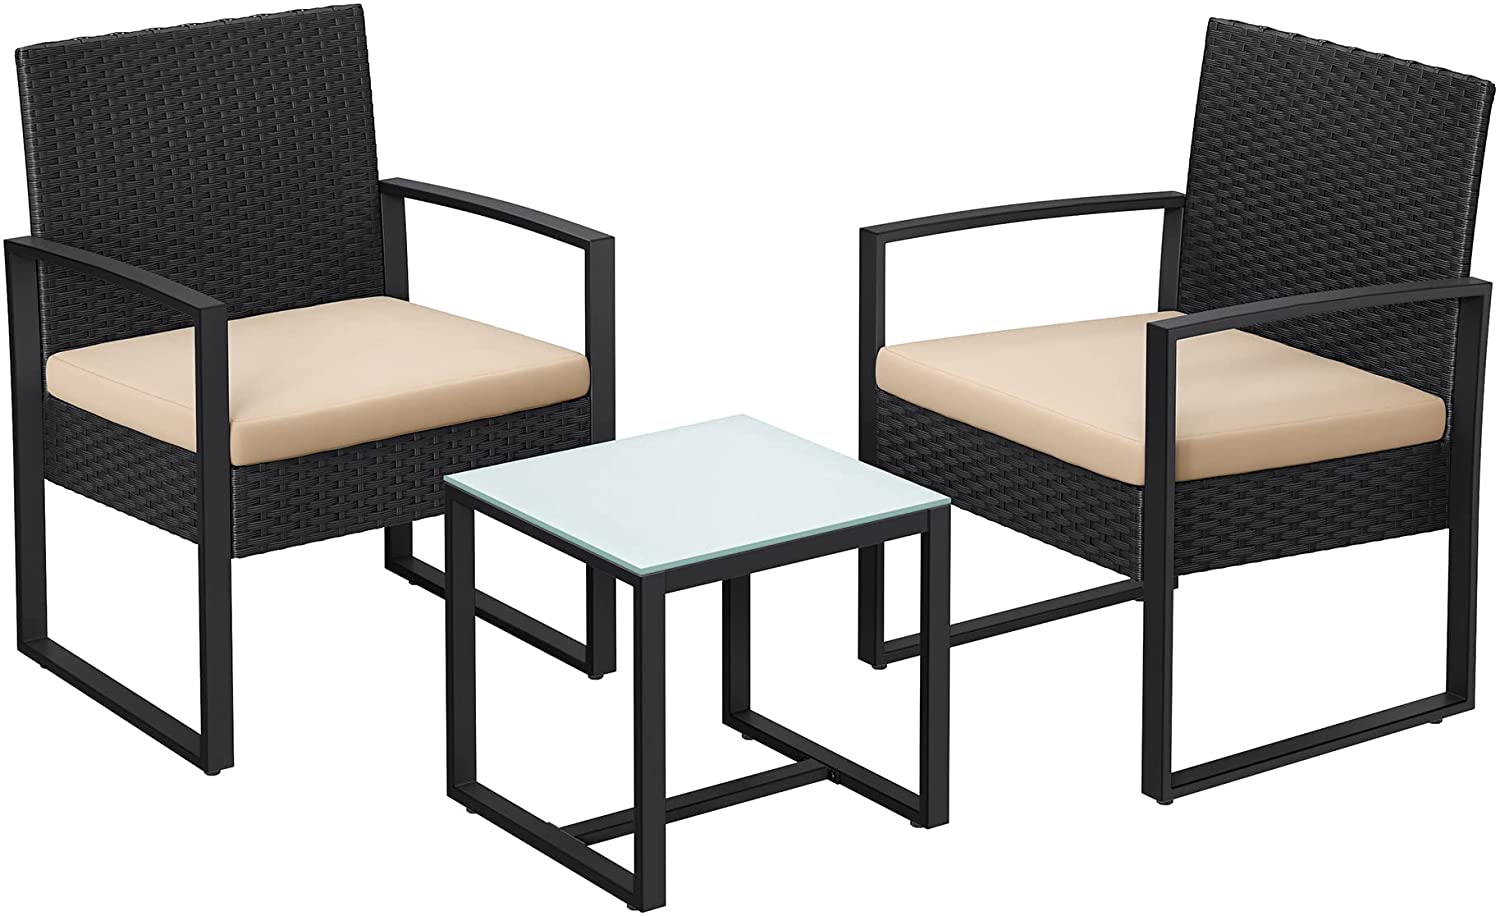 Kerti bútor garnitúra, 1 asztal és 2 db szék, 40 x 39 x 40 cm, fekete/bézs